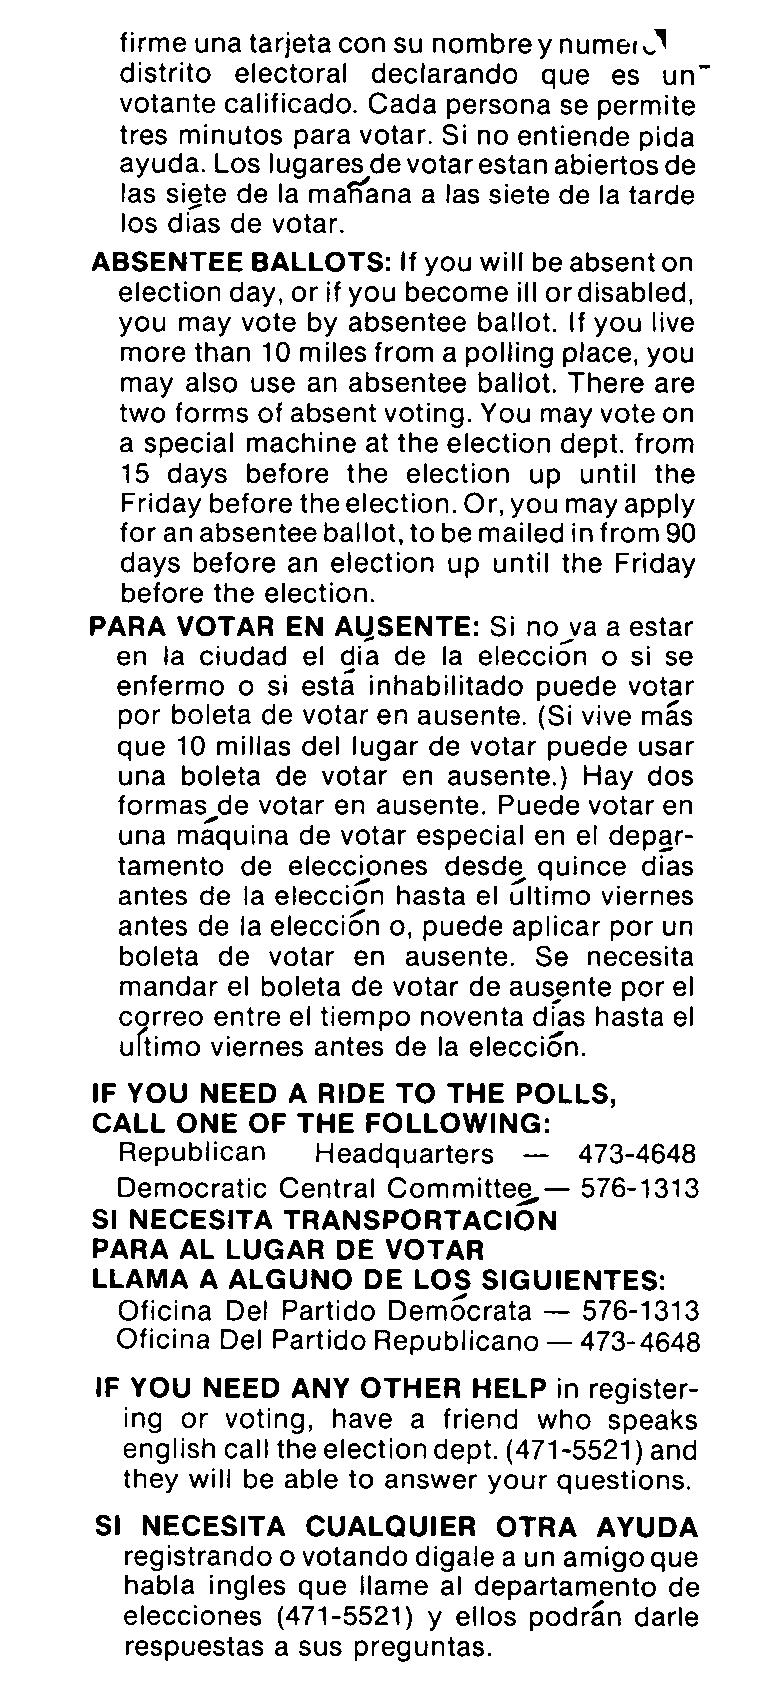 firme una tarjeta con su nombrey numel~' distrito electoral declarando que es unvotante calificado. Cada persona se permite tres minutos para votar. Si no entiende pida ayuda.